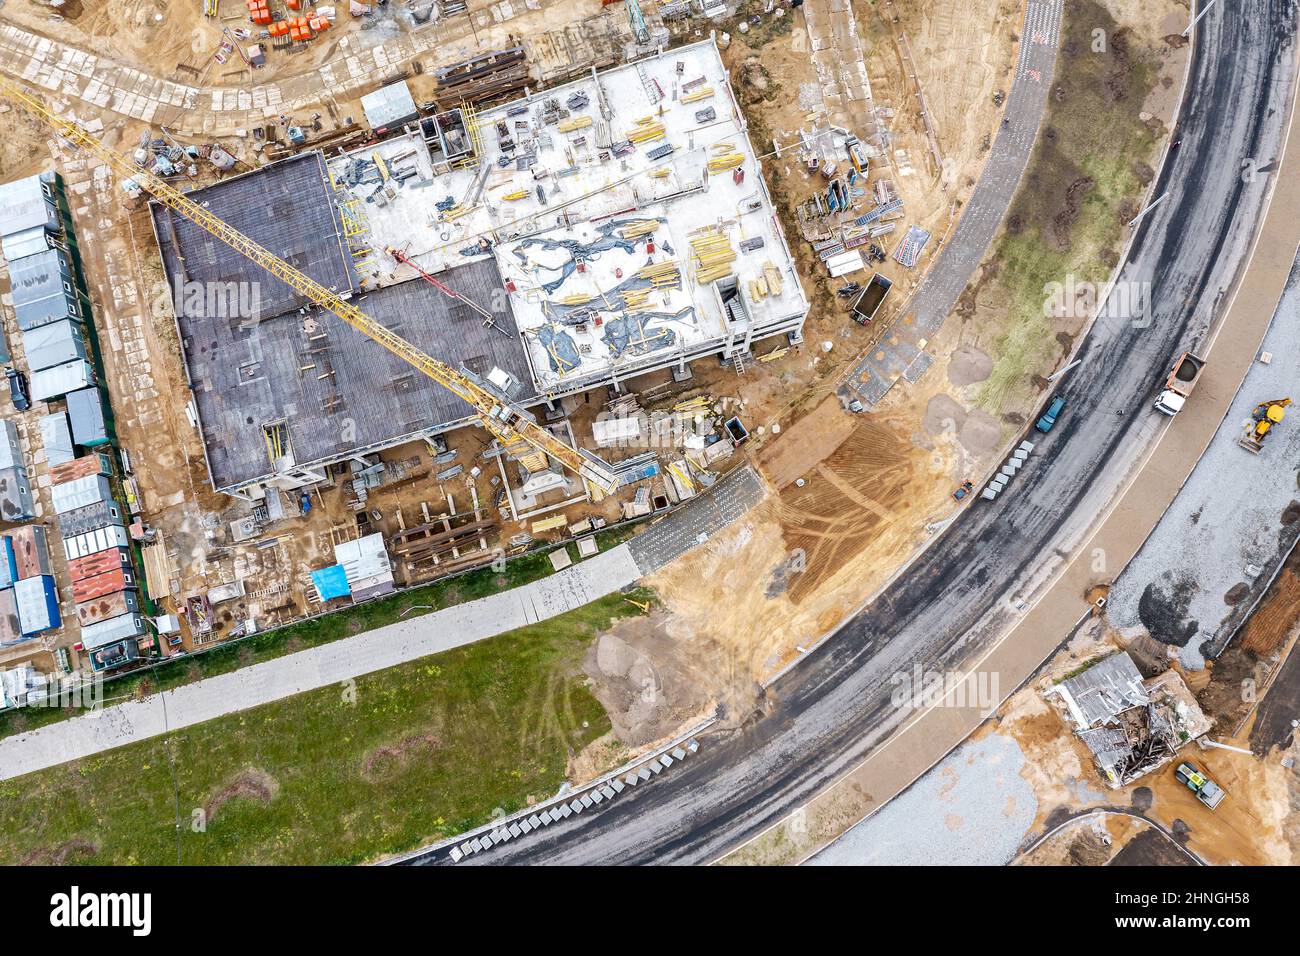 nuova strada in costruzione. cantiere in zona residenziale durante i lavori stradali. vista dall'alto aerea. Foto Stock